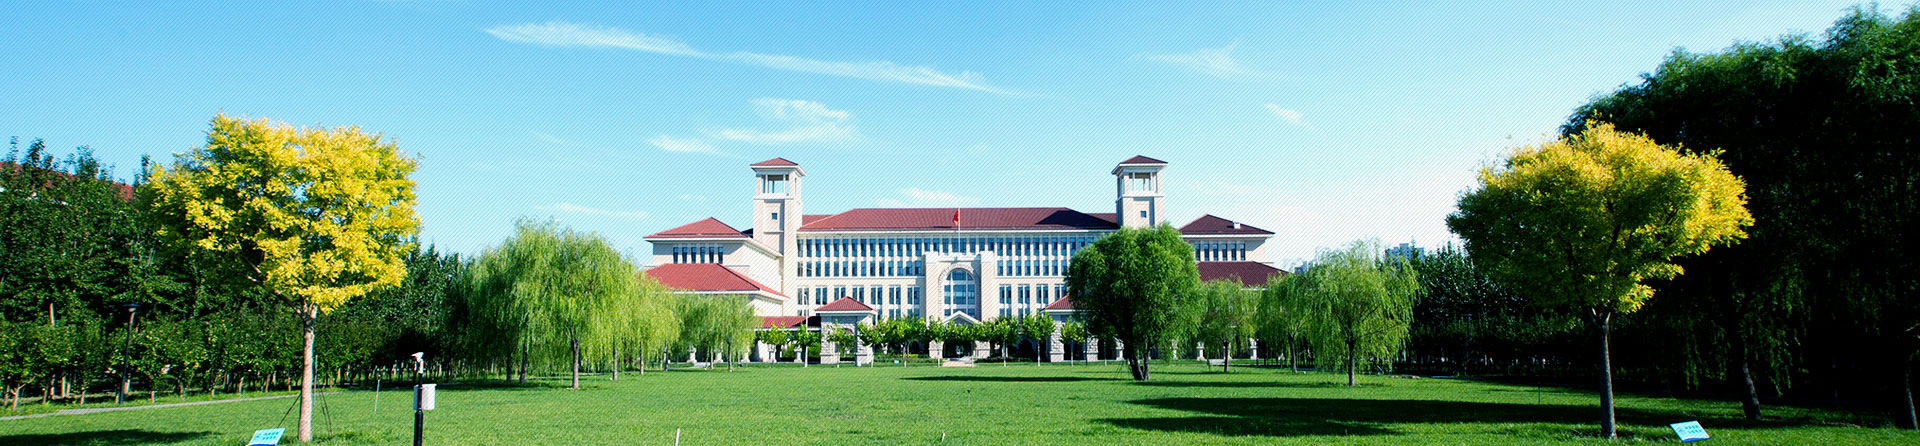 天津市电子信息技师学院